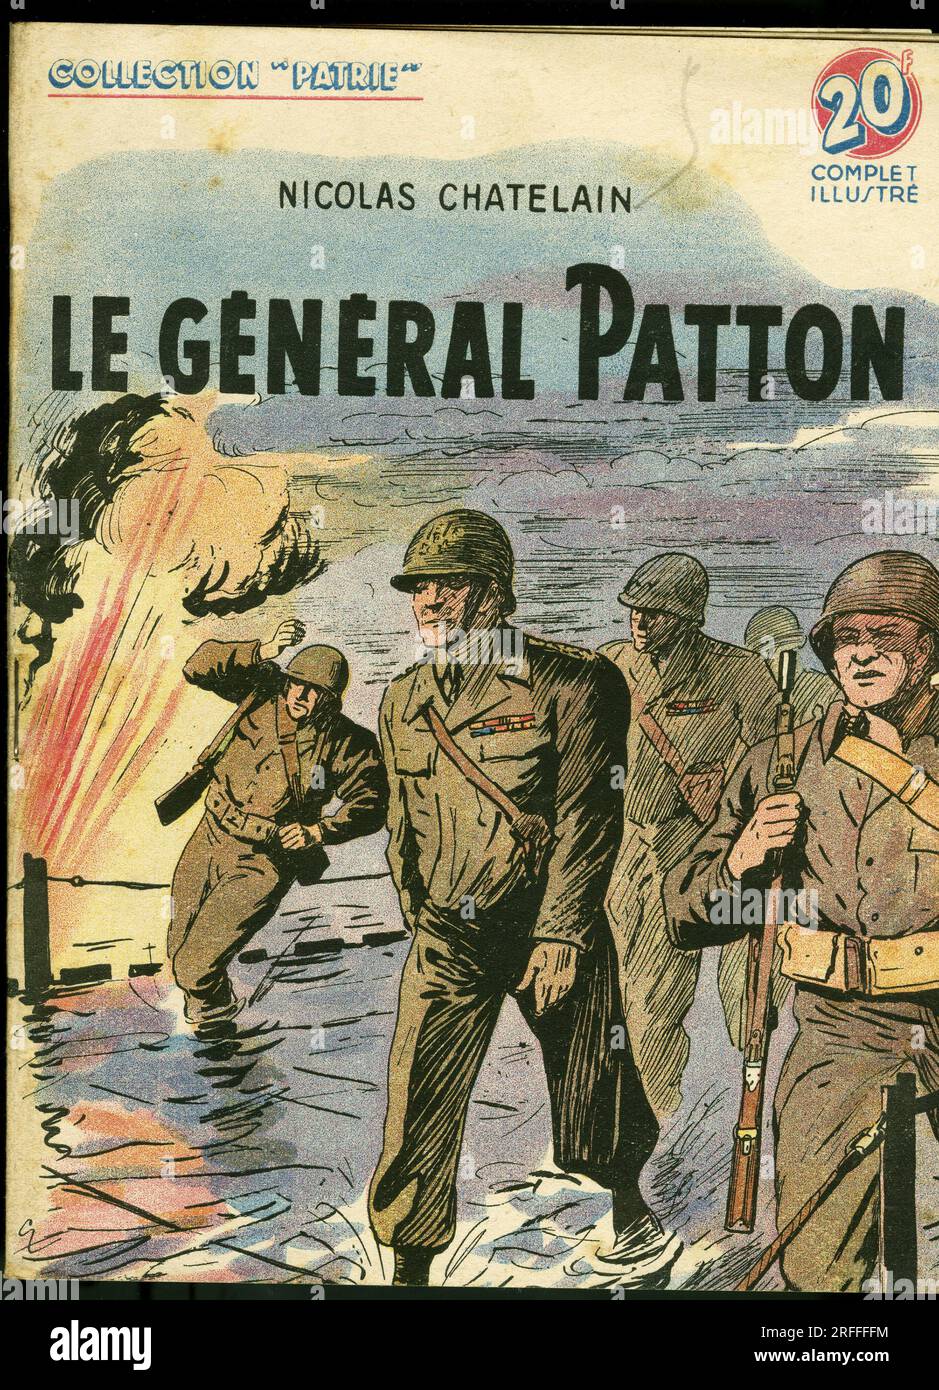 Couverture d'un illustre pour la jeunesse ' Le General George Smith Patton (1885-1945)' de Nicolas Chatelain, Editions Rouff, Collection Patrie, numero 92, 1949, Paris. Stockfoto